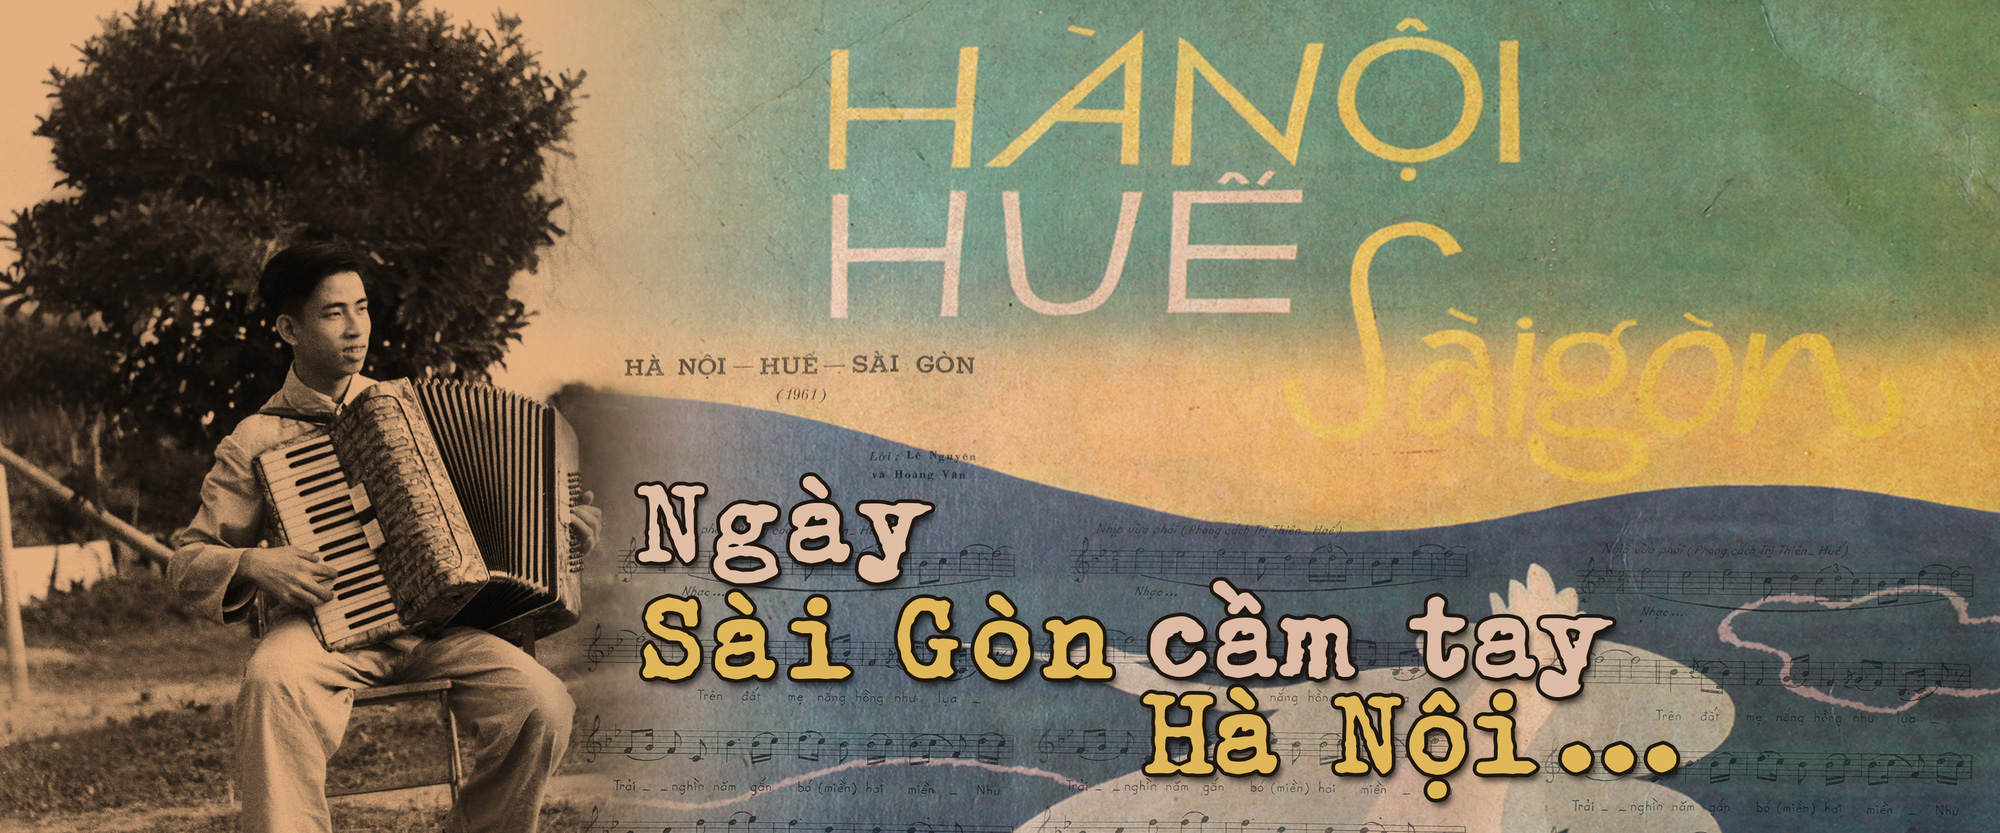 Ngày Sài Gòn cầm tay Hà Nội...